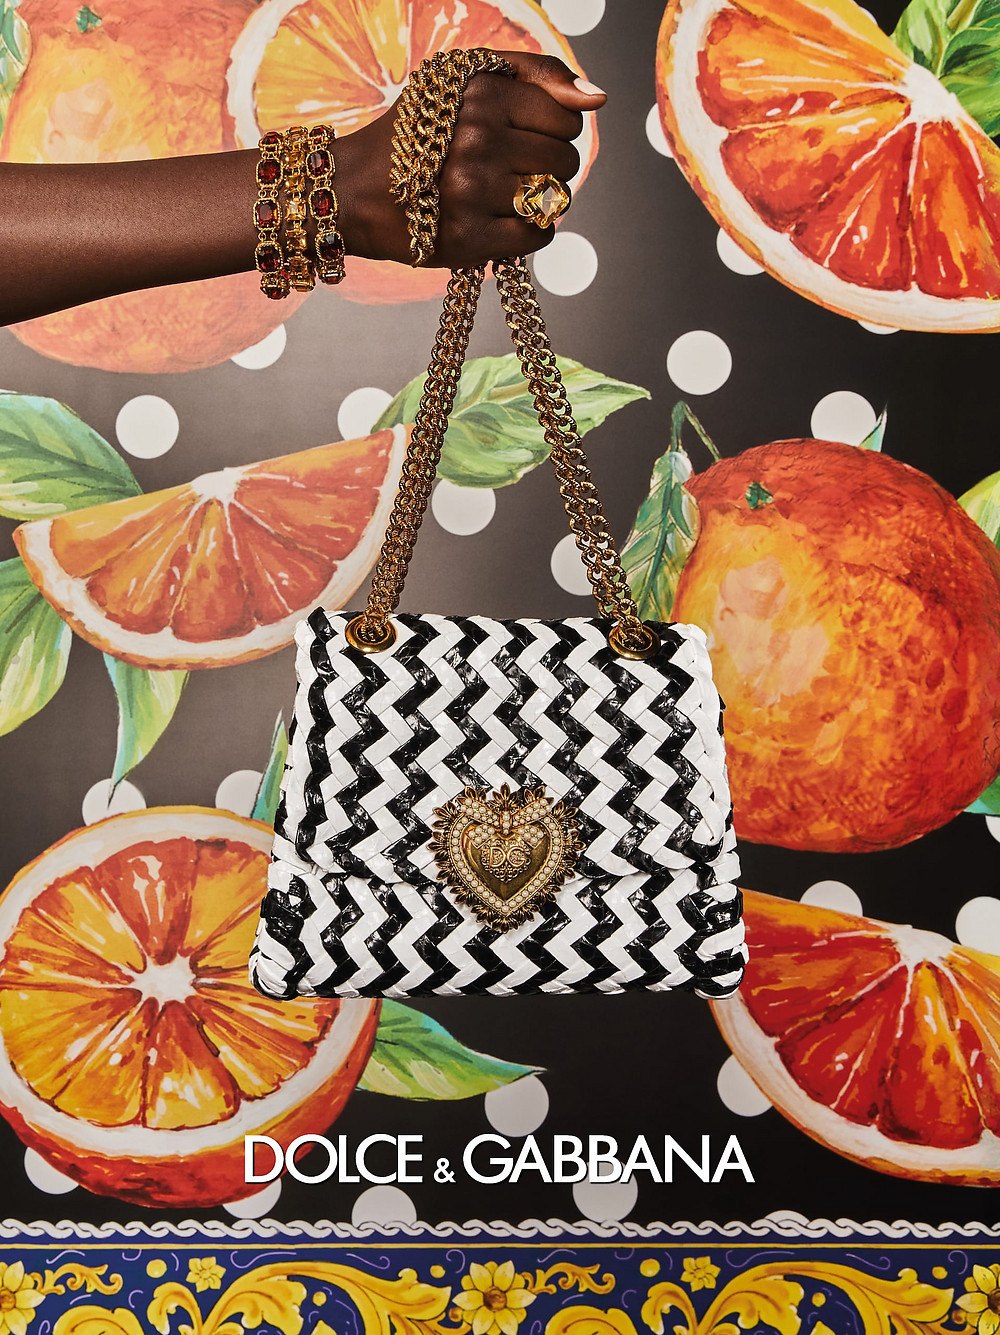 imagen 5 de Jeans y color, así son las mujeres Dolce & Gabbana y sus bolsos la próxima primavera.